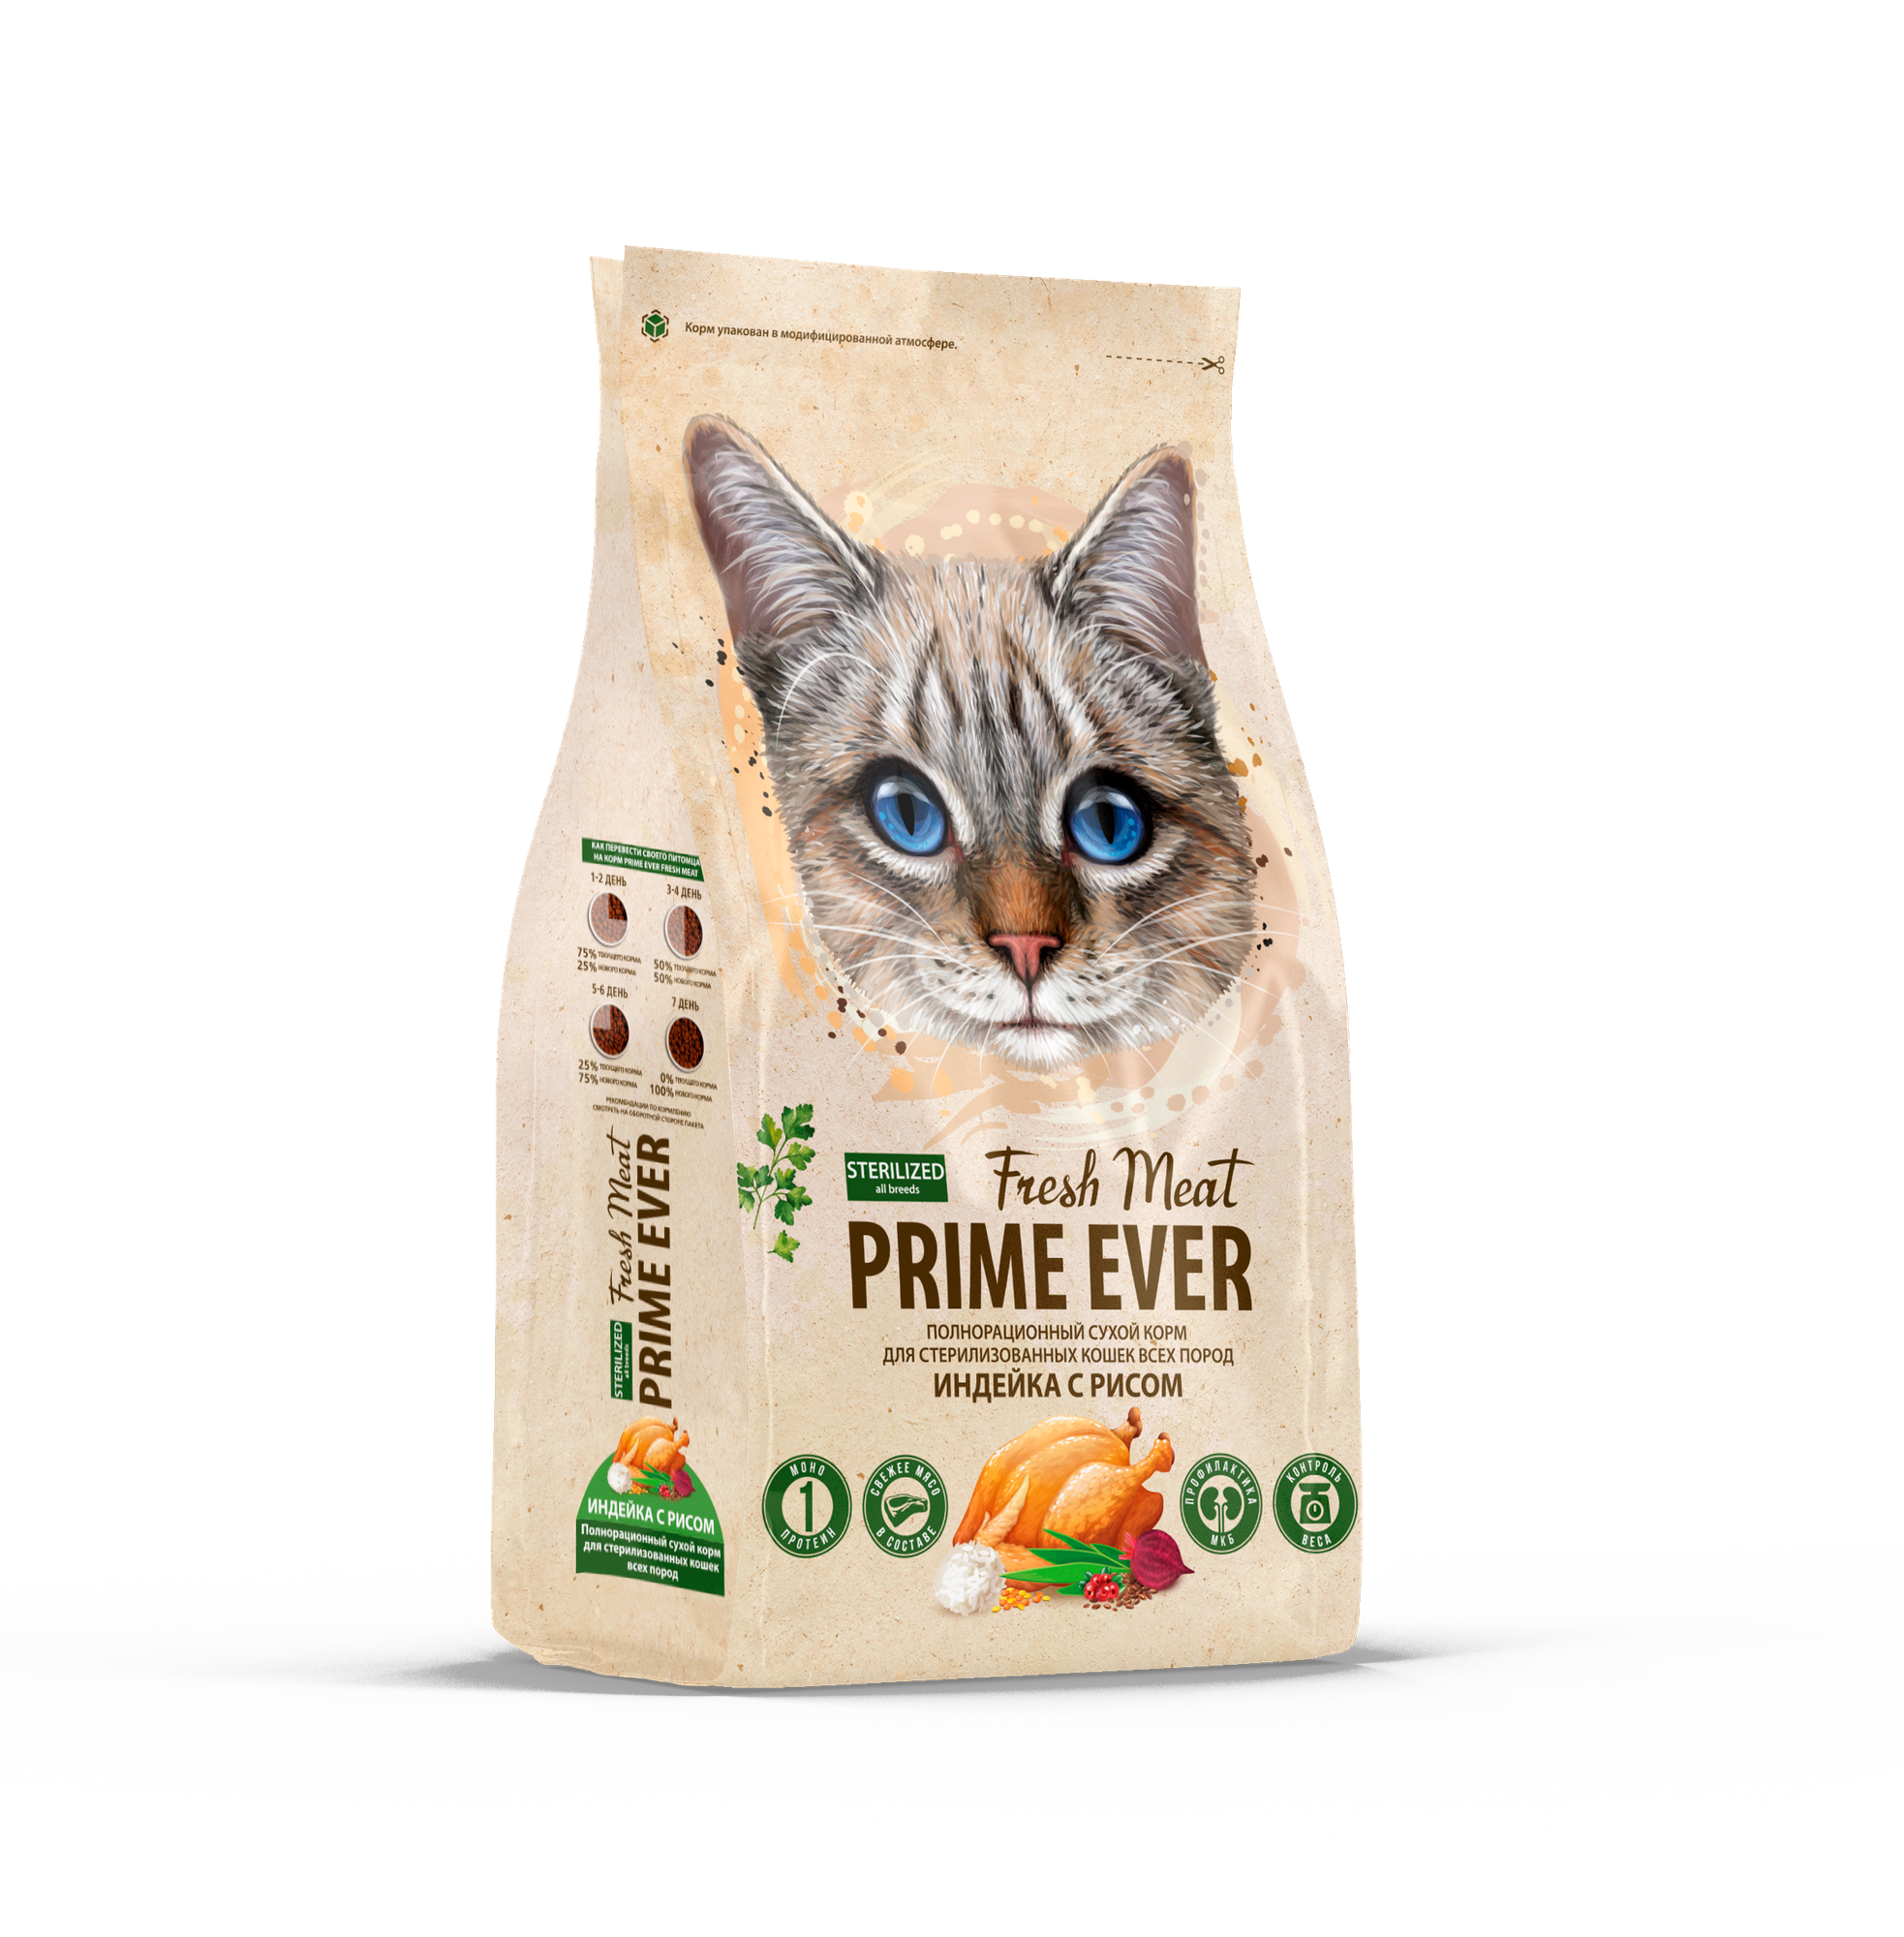 Сухой корм для стерилизованных кошек всех пород Prime Ever Fresh Meat Sterilized Adult Cat, индейка с рисом, 370 г